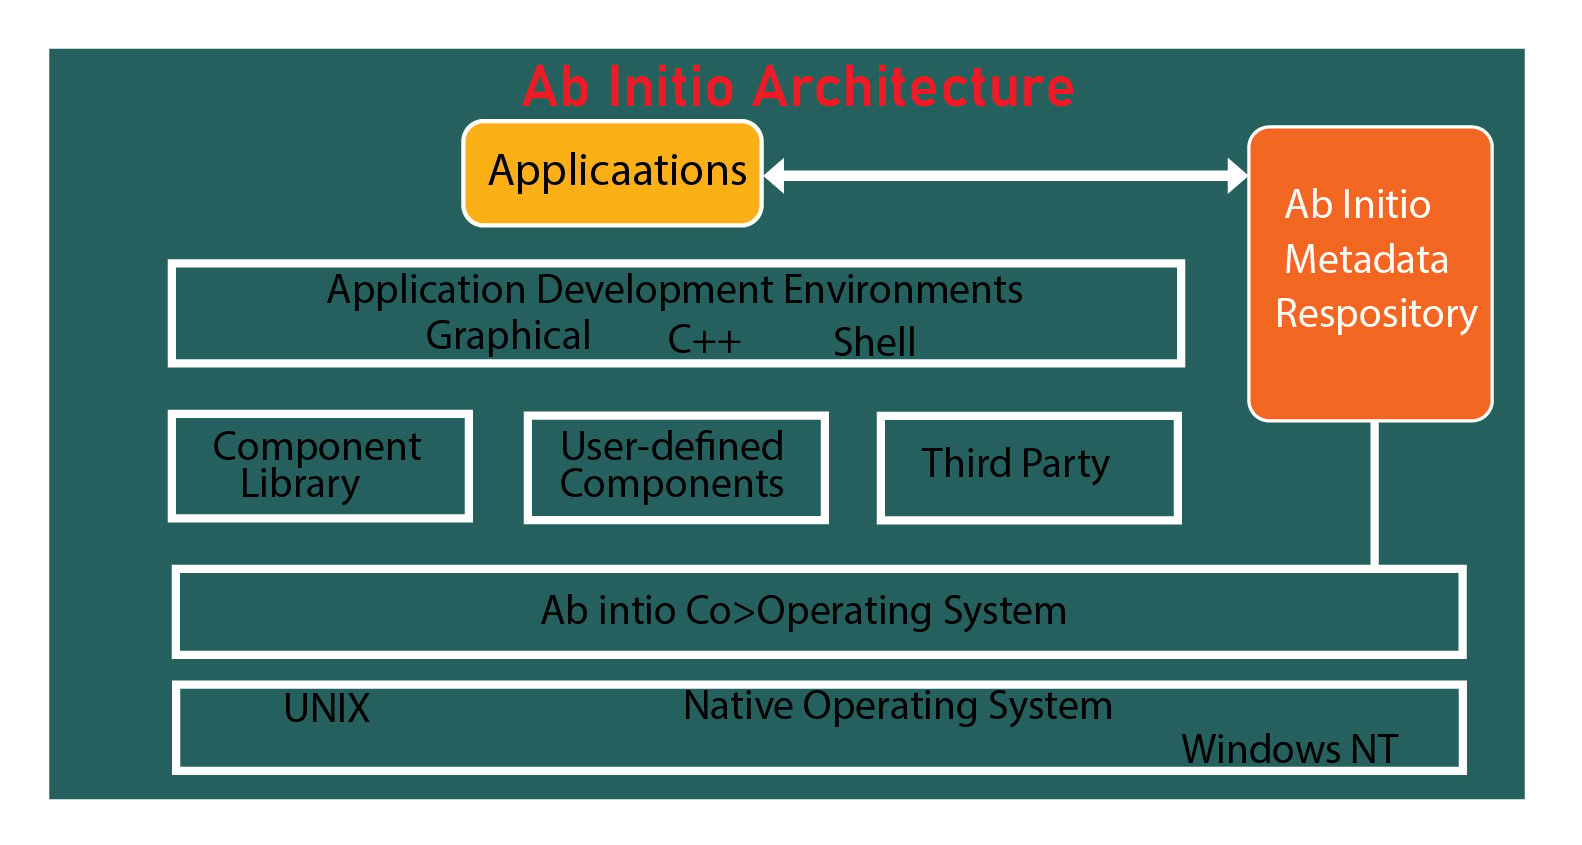 Ab initio architecture